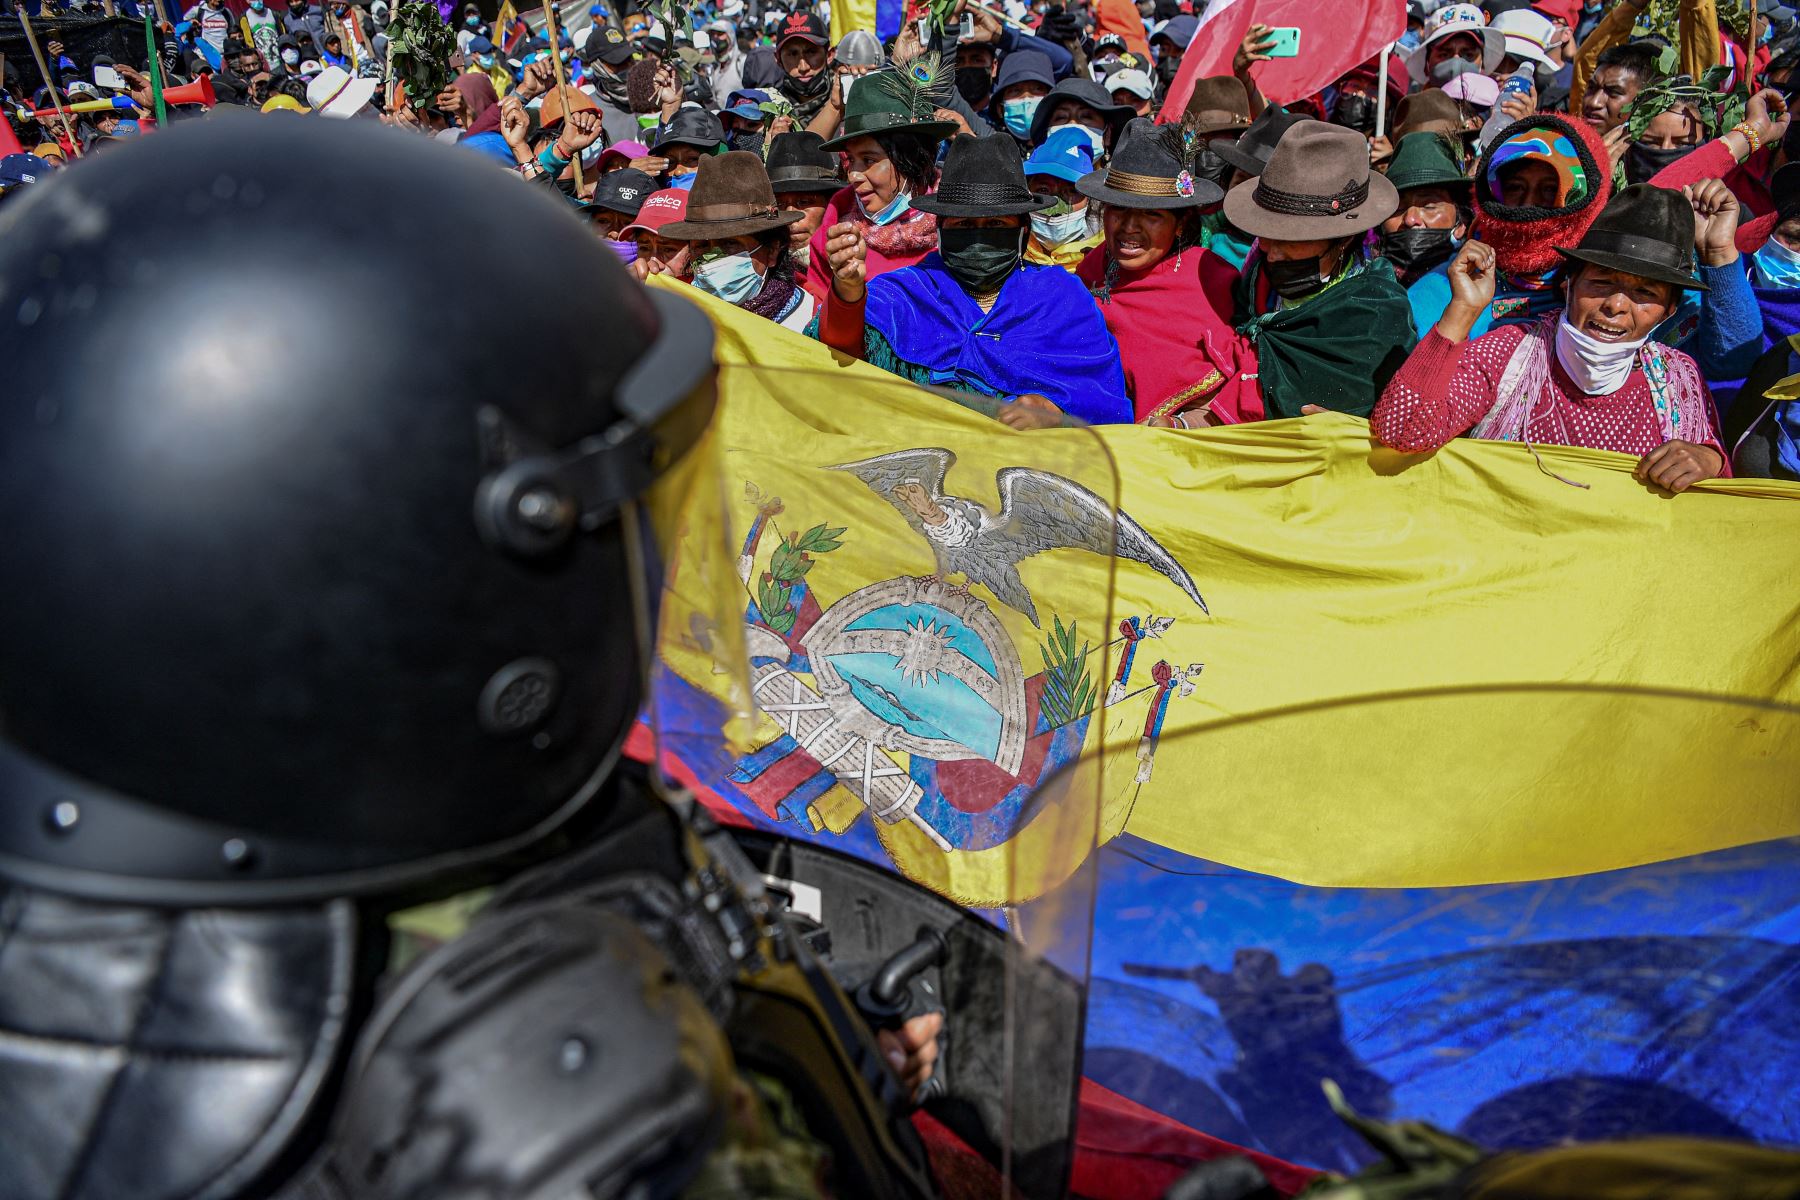 Manifestantes intentan ingresar a la Asamblea Nacional en Quito el 23 de junio de 2022, en el marco de protestas lideradas por indígenas contra el gobierno. Indígenas ecuatorianos han llegado a la capital, Quito, de todo el país para protestar por los altos precios del combustible y el aumento del costo de vida, prometiendo quedarse hasta que el gobierno cumpla con sus demandas o caiga en contra del gobierno. 
Foto: AFP